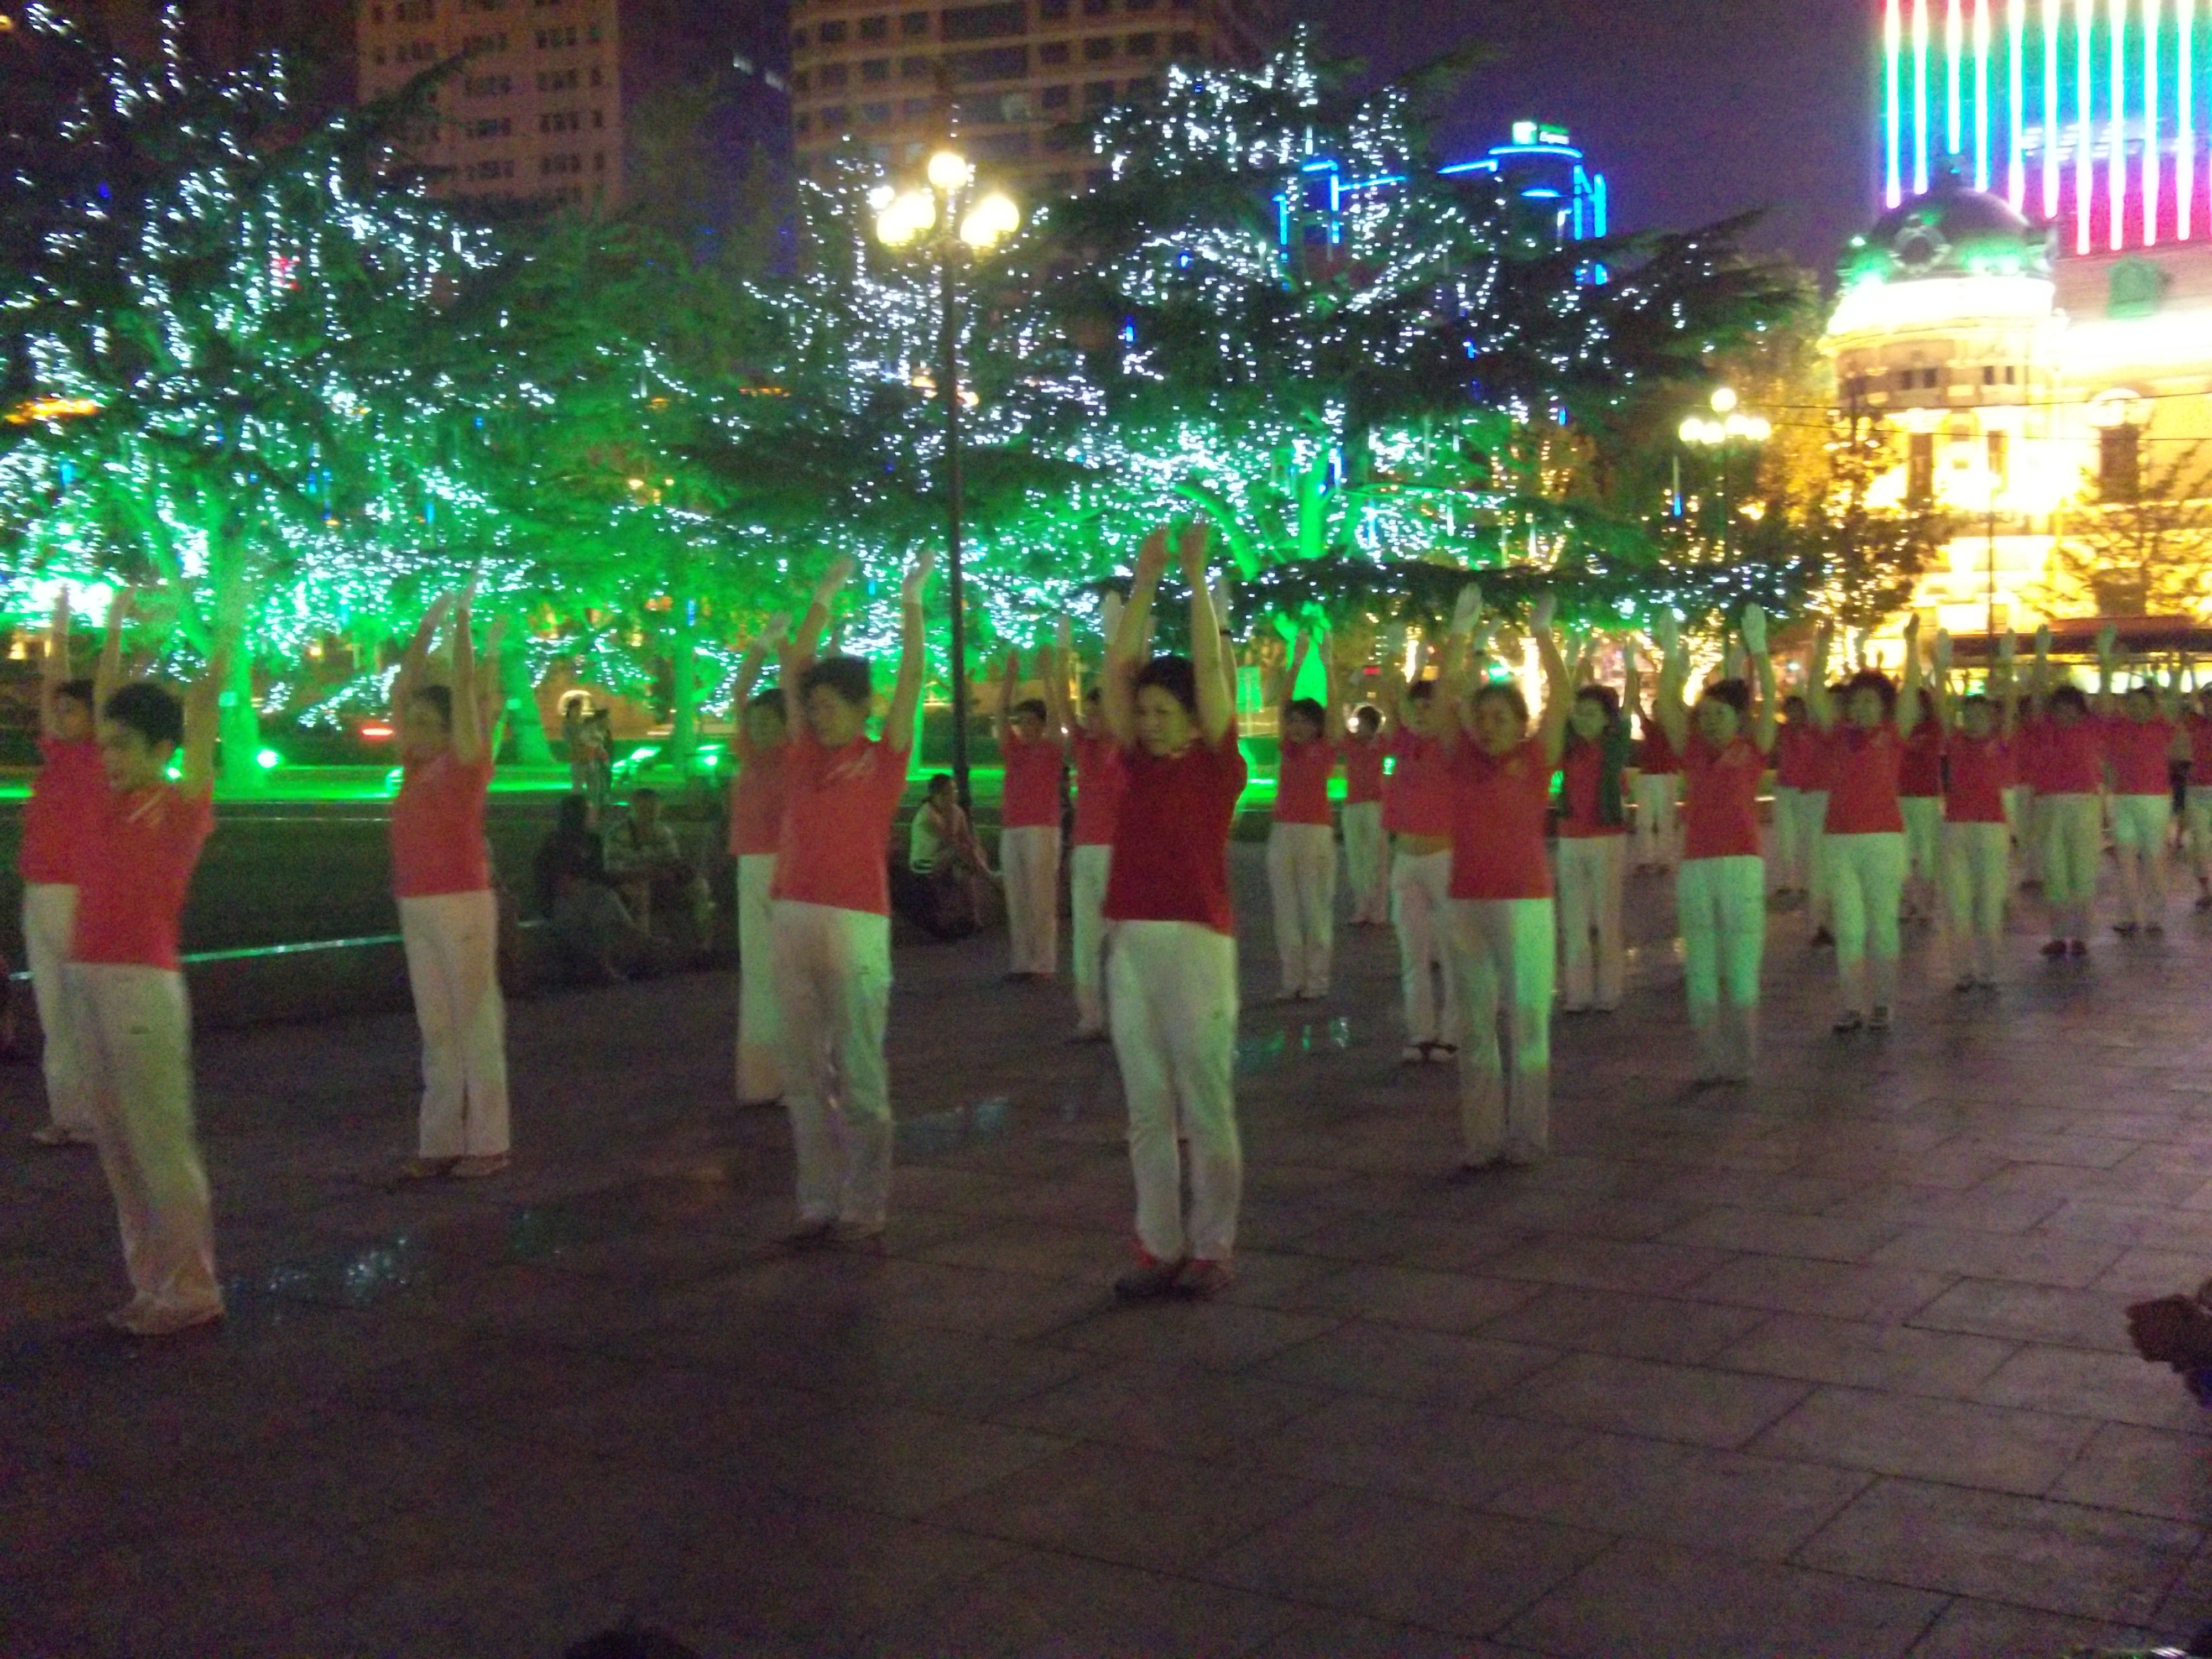 Tánc a Zhongshanguangchang (中山广场) téren (Dancing on the Zhongshanguangchang square) 